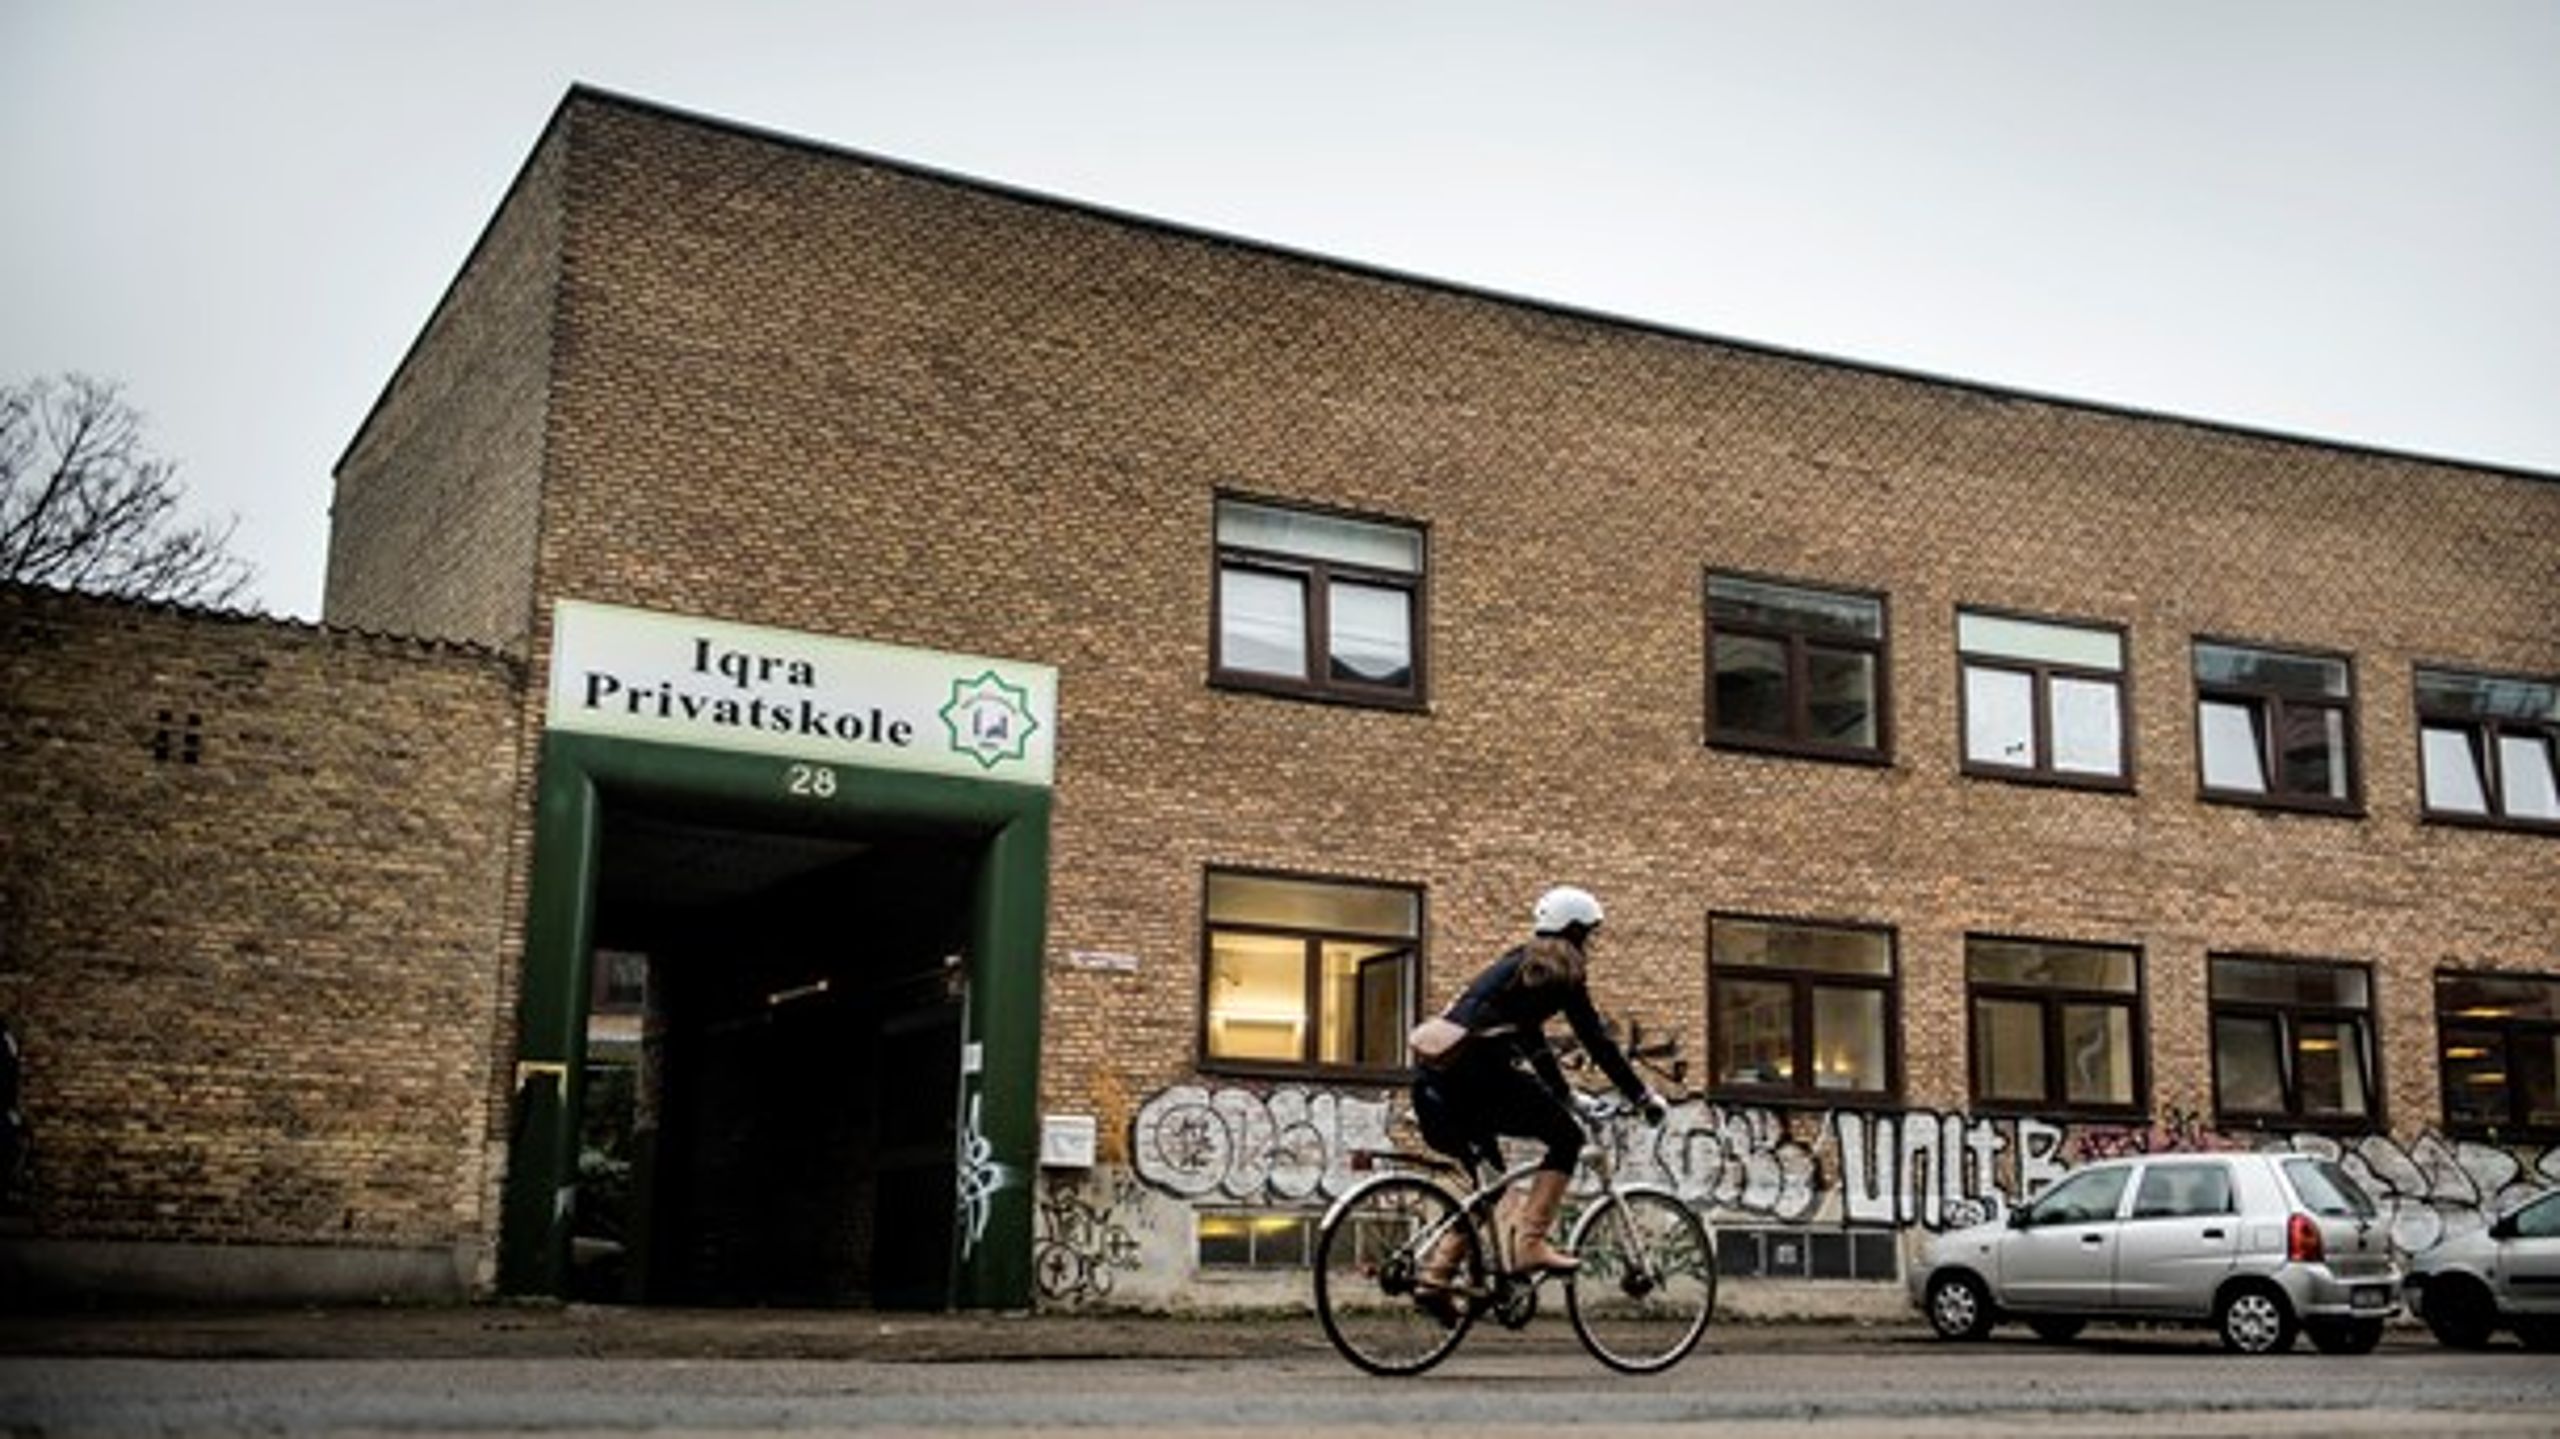 Iqra Privatskole på Nørrebro i København lukkede i 2018, efter at skolen fik frataget sin økonomiske støtte på omkring 20 millioner kroner fra Styrelsen for Undervisning og Kvalitet.